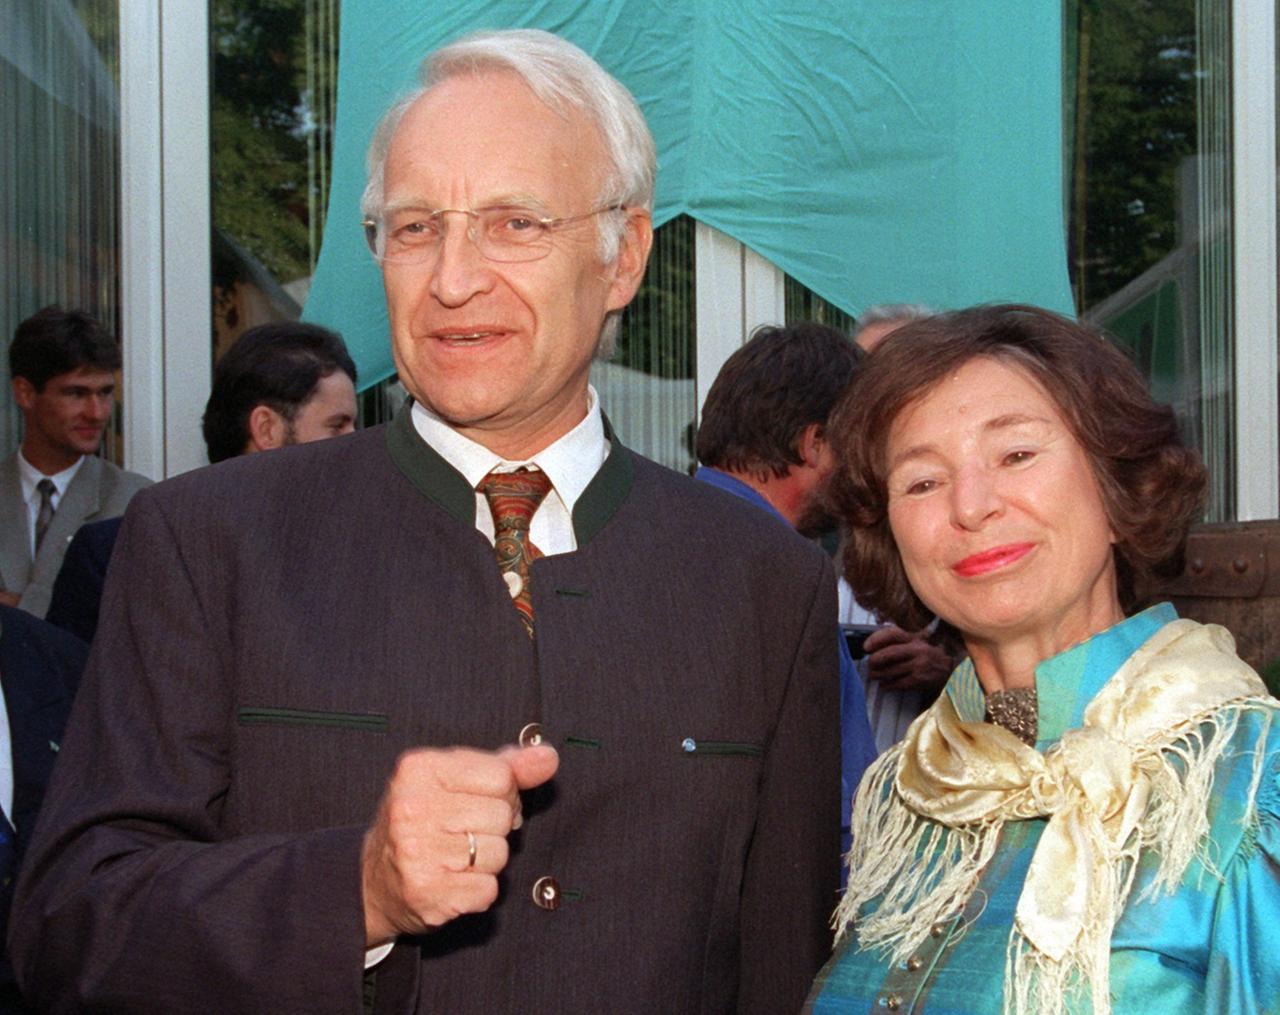 Edmund Stoiber und Ursula Männle (beide CSU) schauen in eine Kamera (1997).